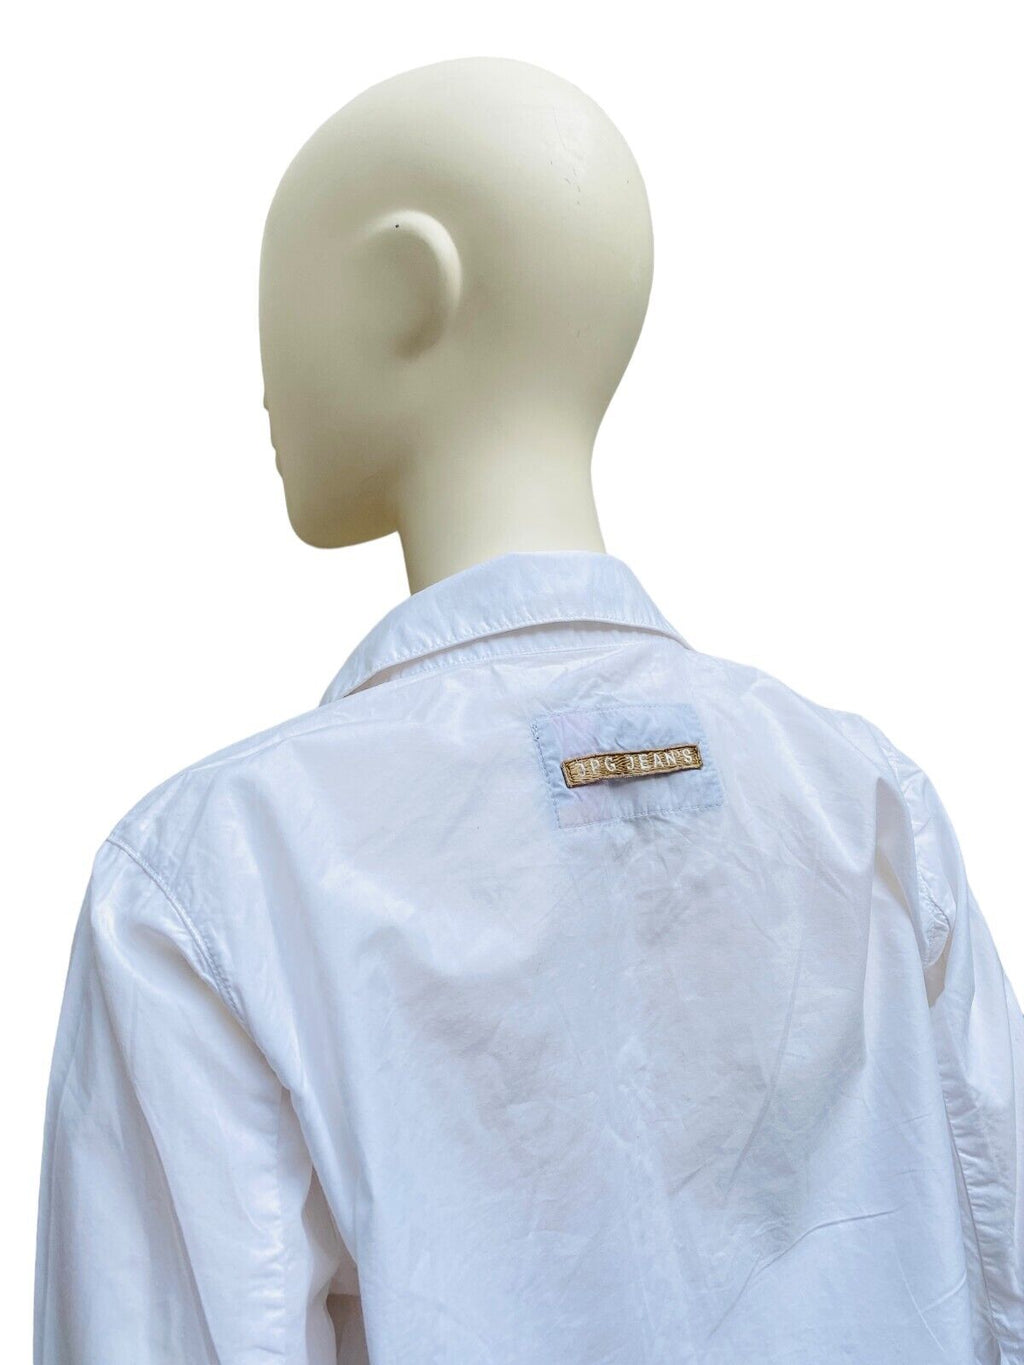 Vintage Cropped white shirt Size IT 46 EU 42 fits M